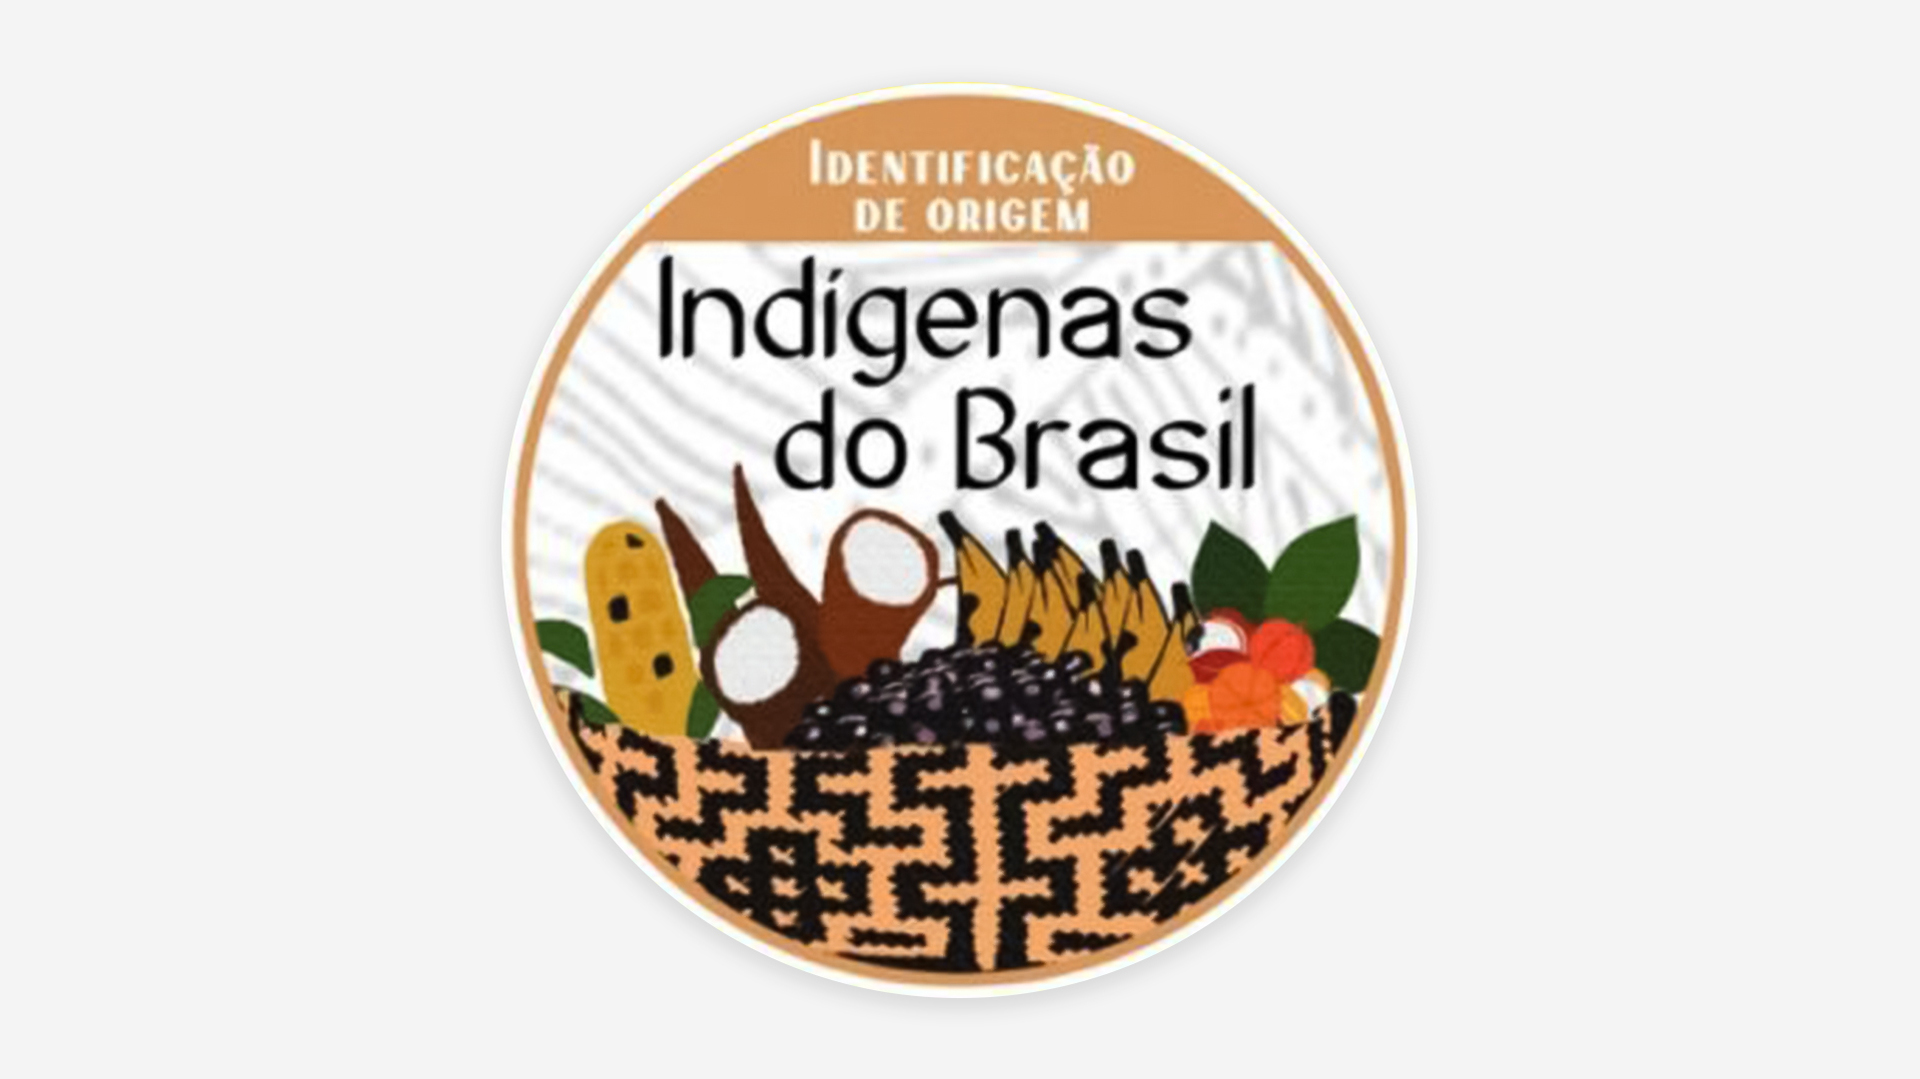 Produtos indígenas agora têm seu selo de certificação de origem no Brasil